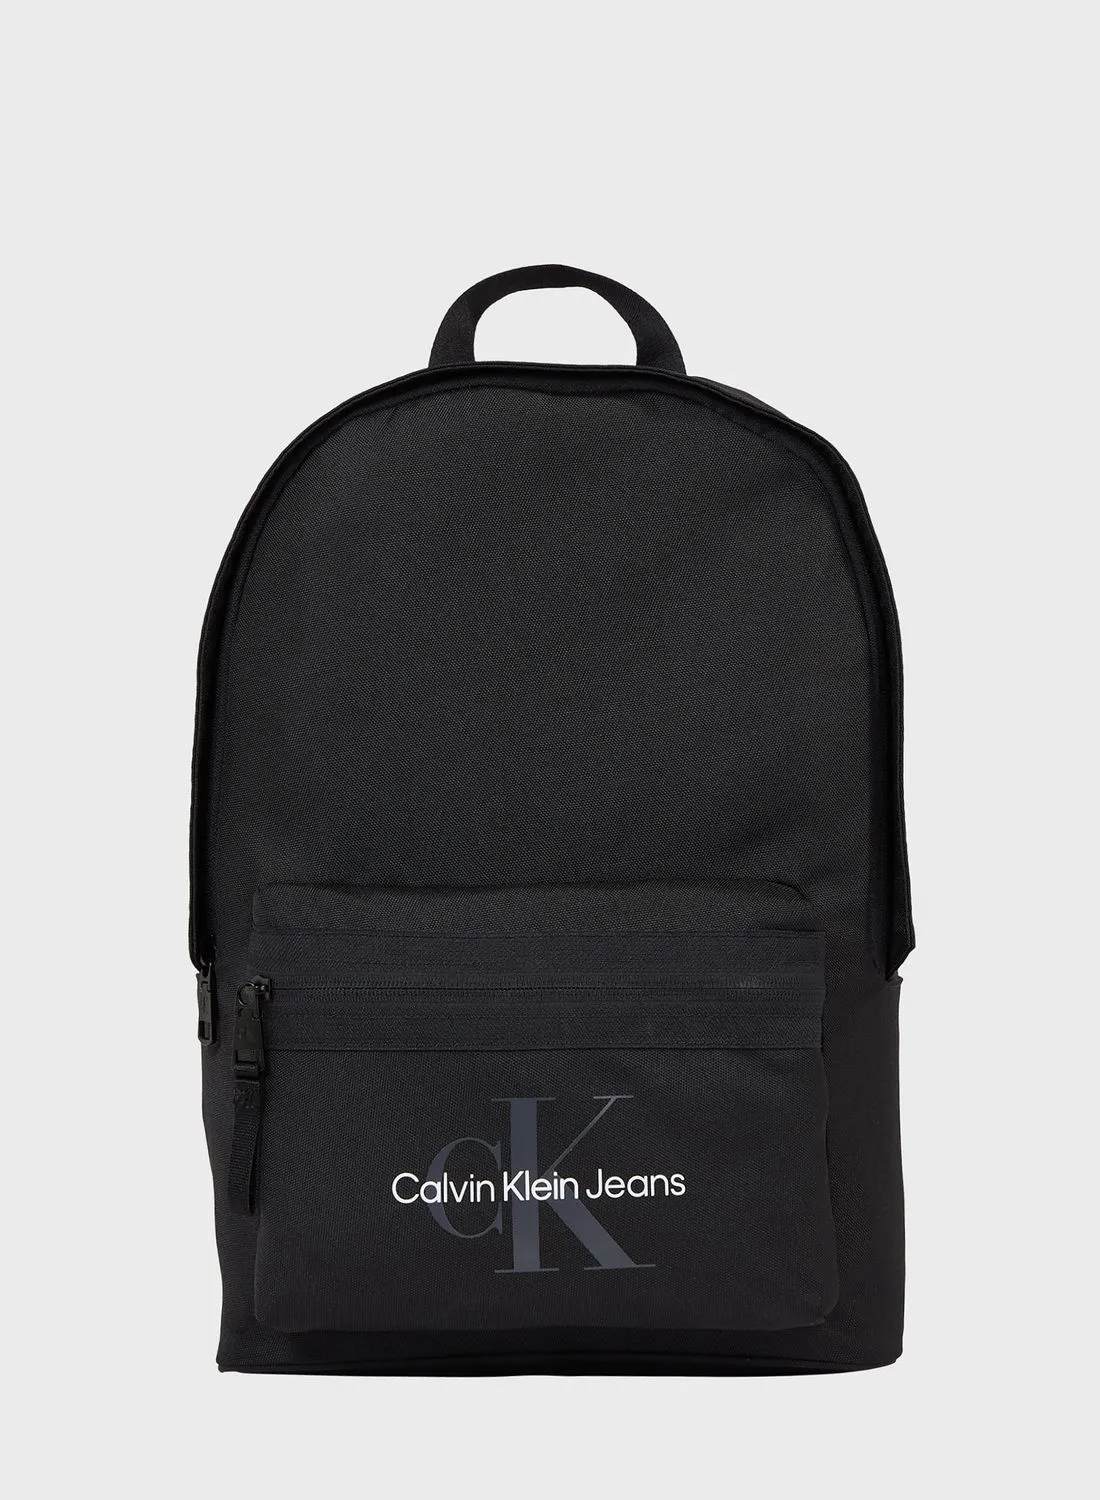 Calvin Klein Jeans Top Handle Front Pocket Zip over backpack